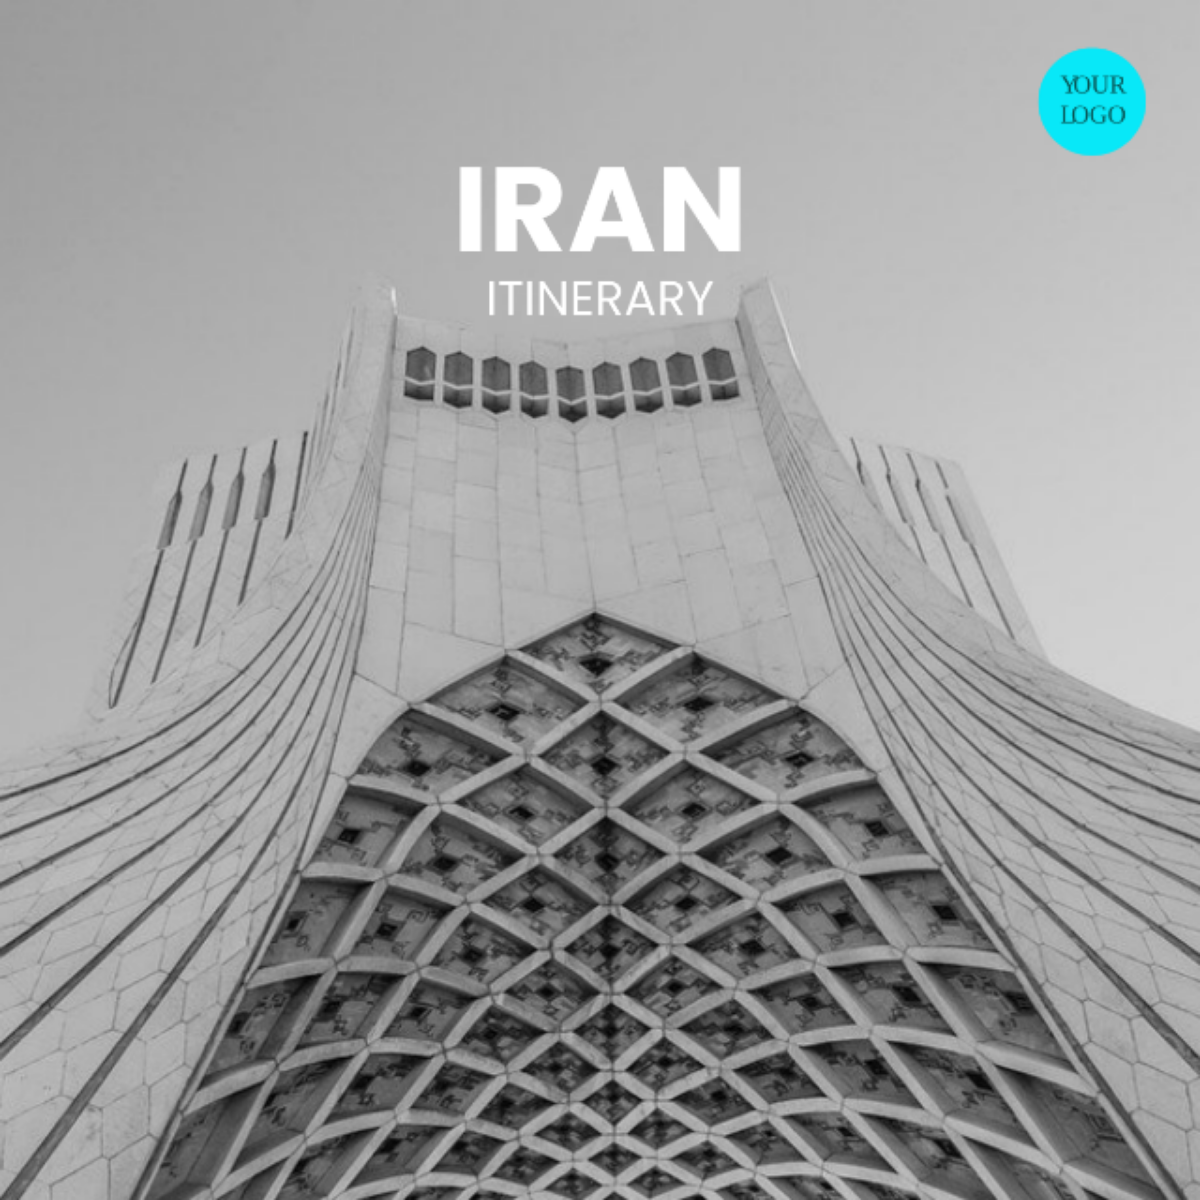 Iran Itinerary Template